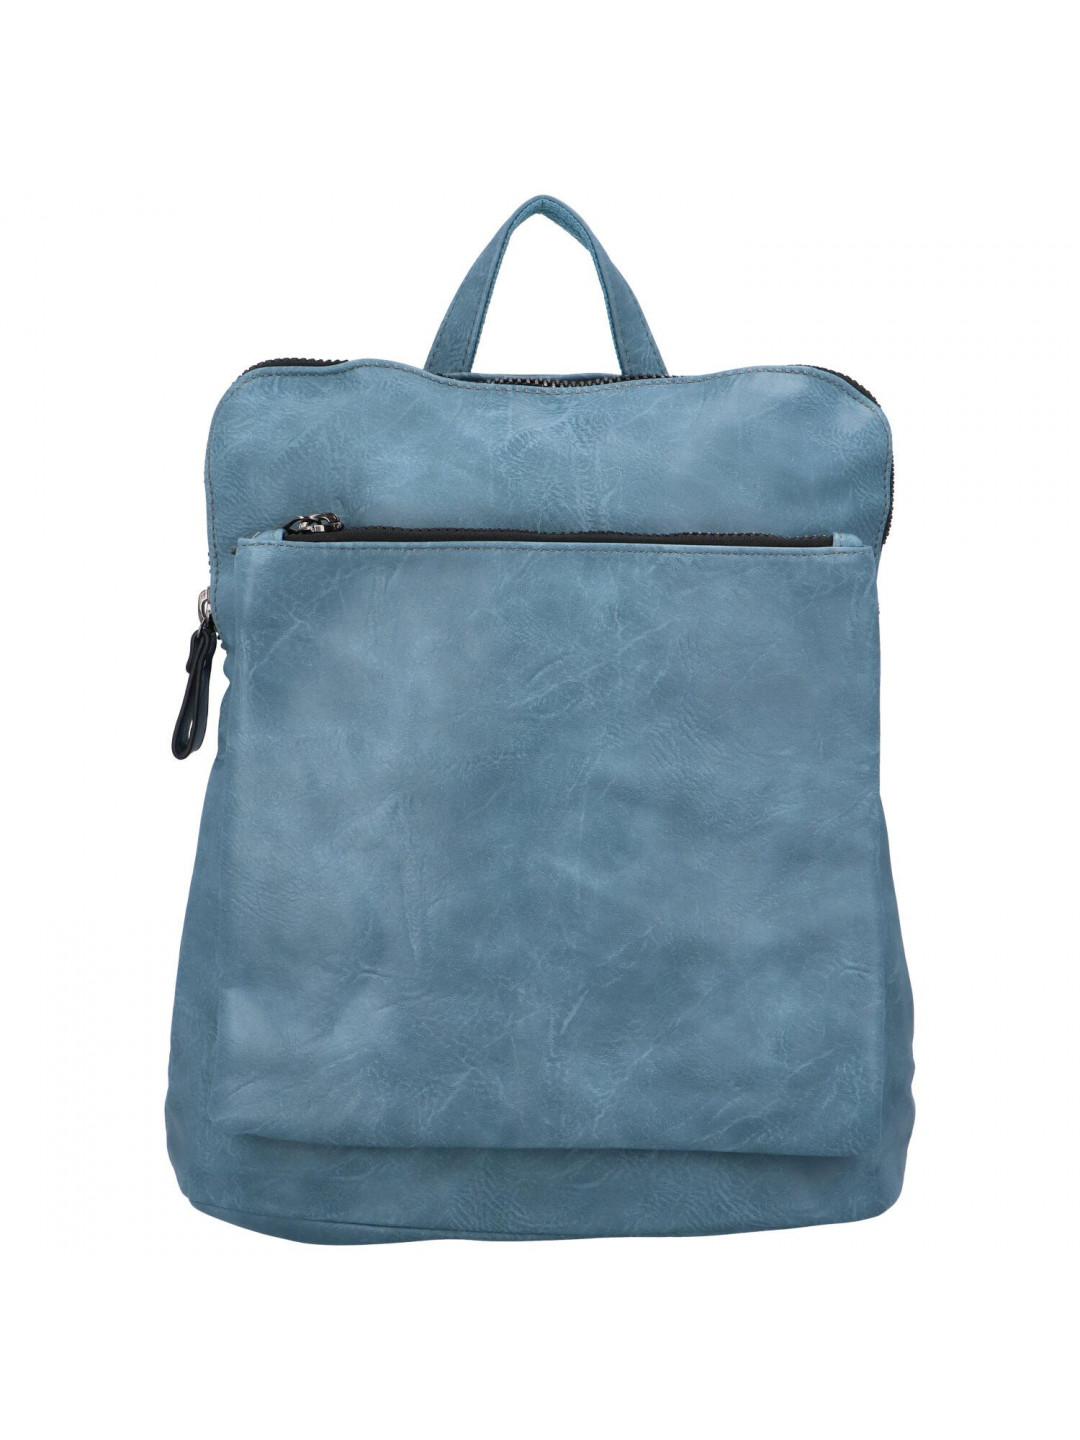 Praktický dámský koženkový kabelko batůžek Reyes světle modrá